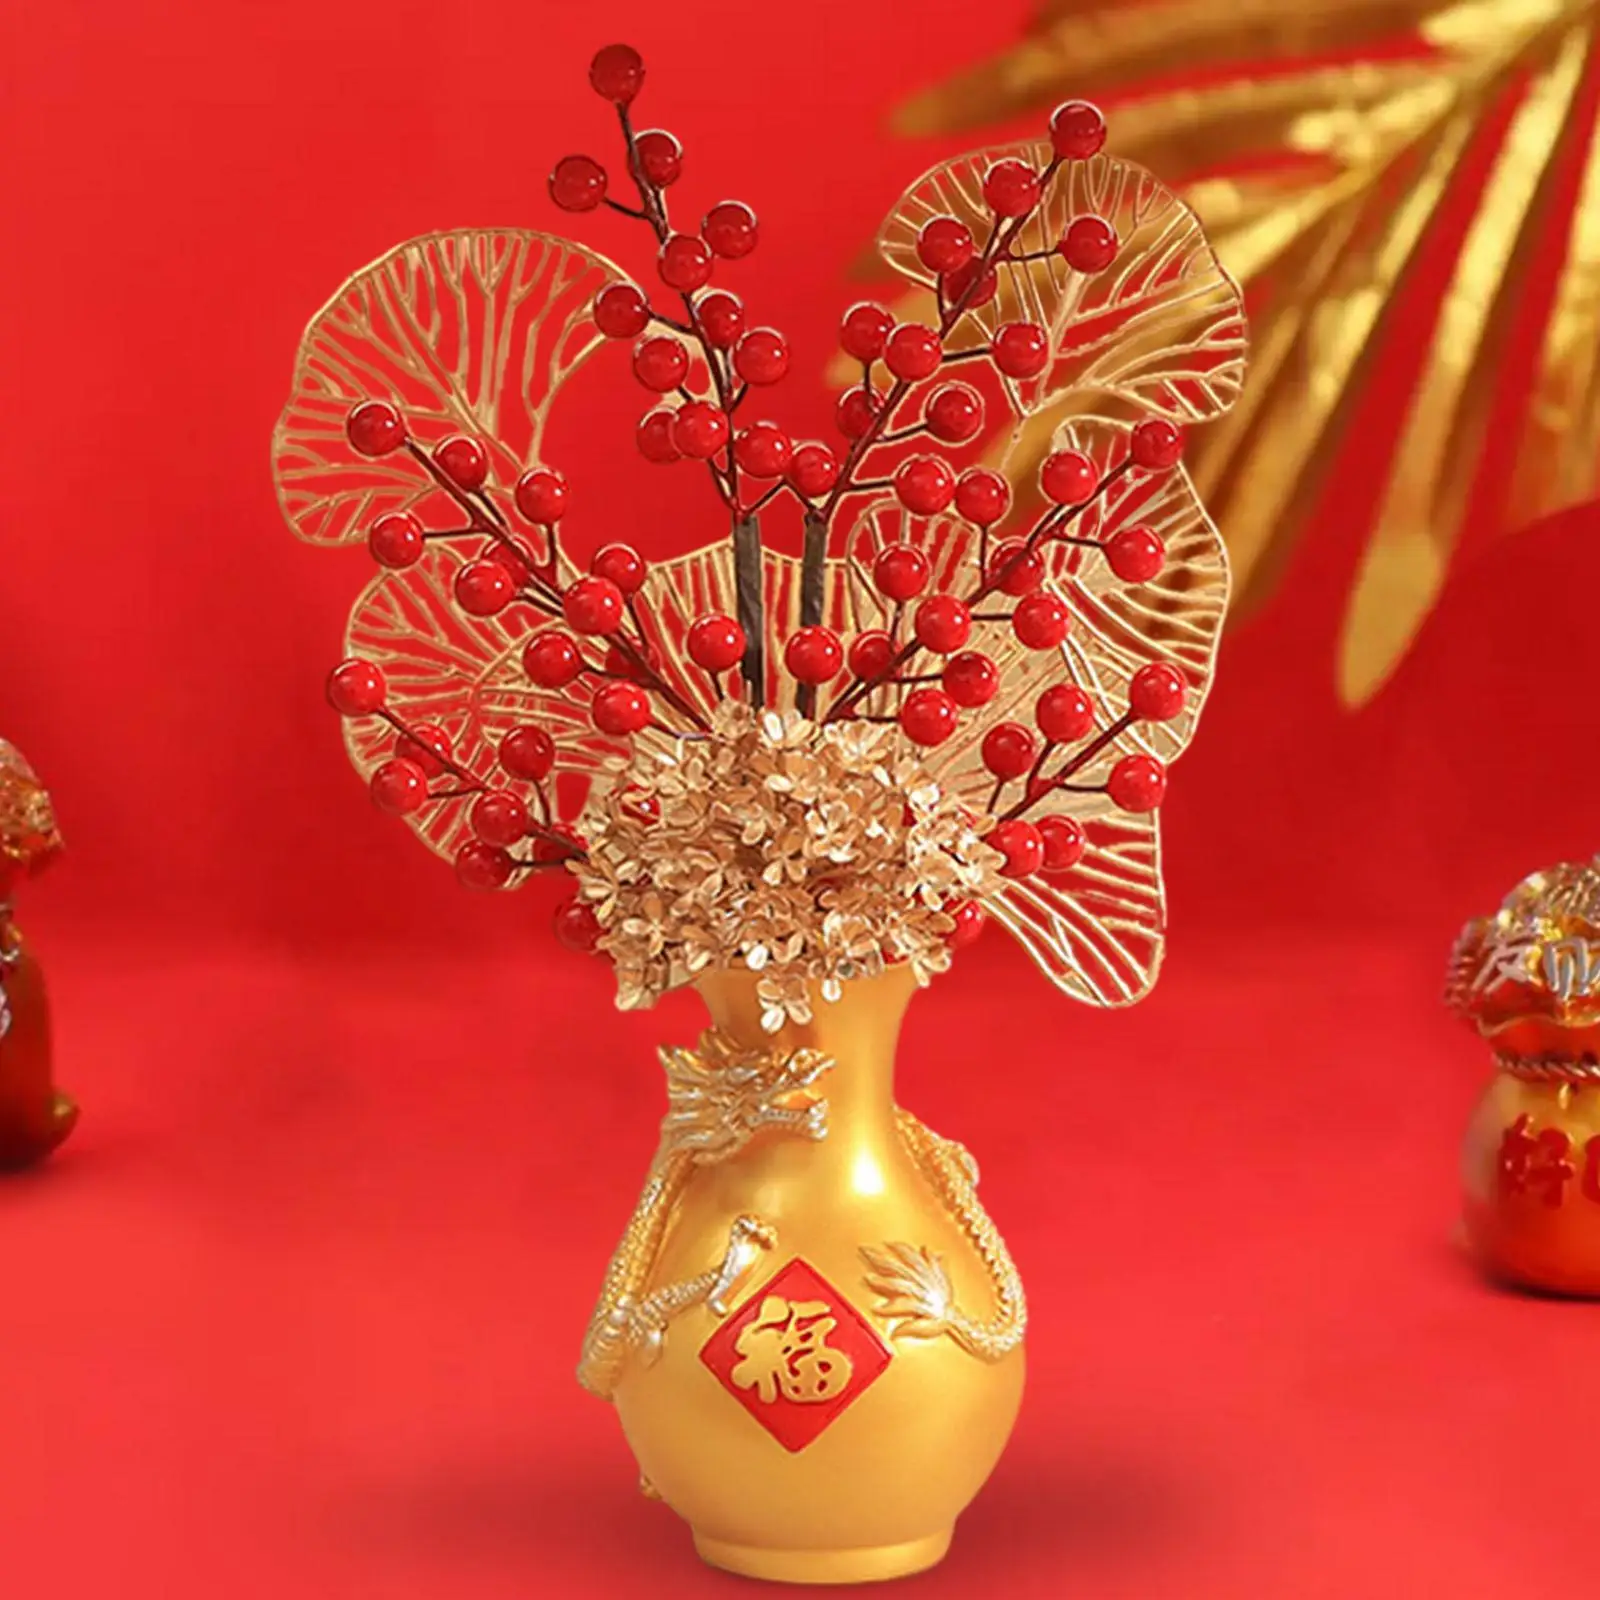 Flower Vase Ornaments Decorate Flowerpot Ornaments Dragon Vase for Porch